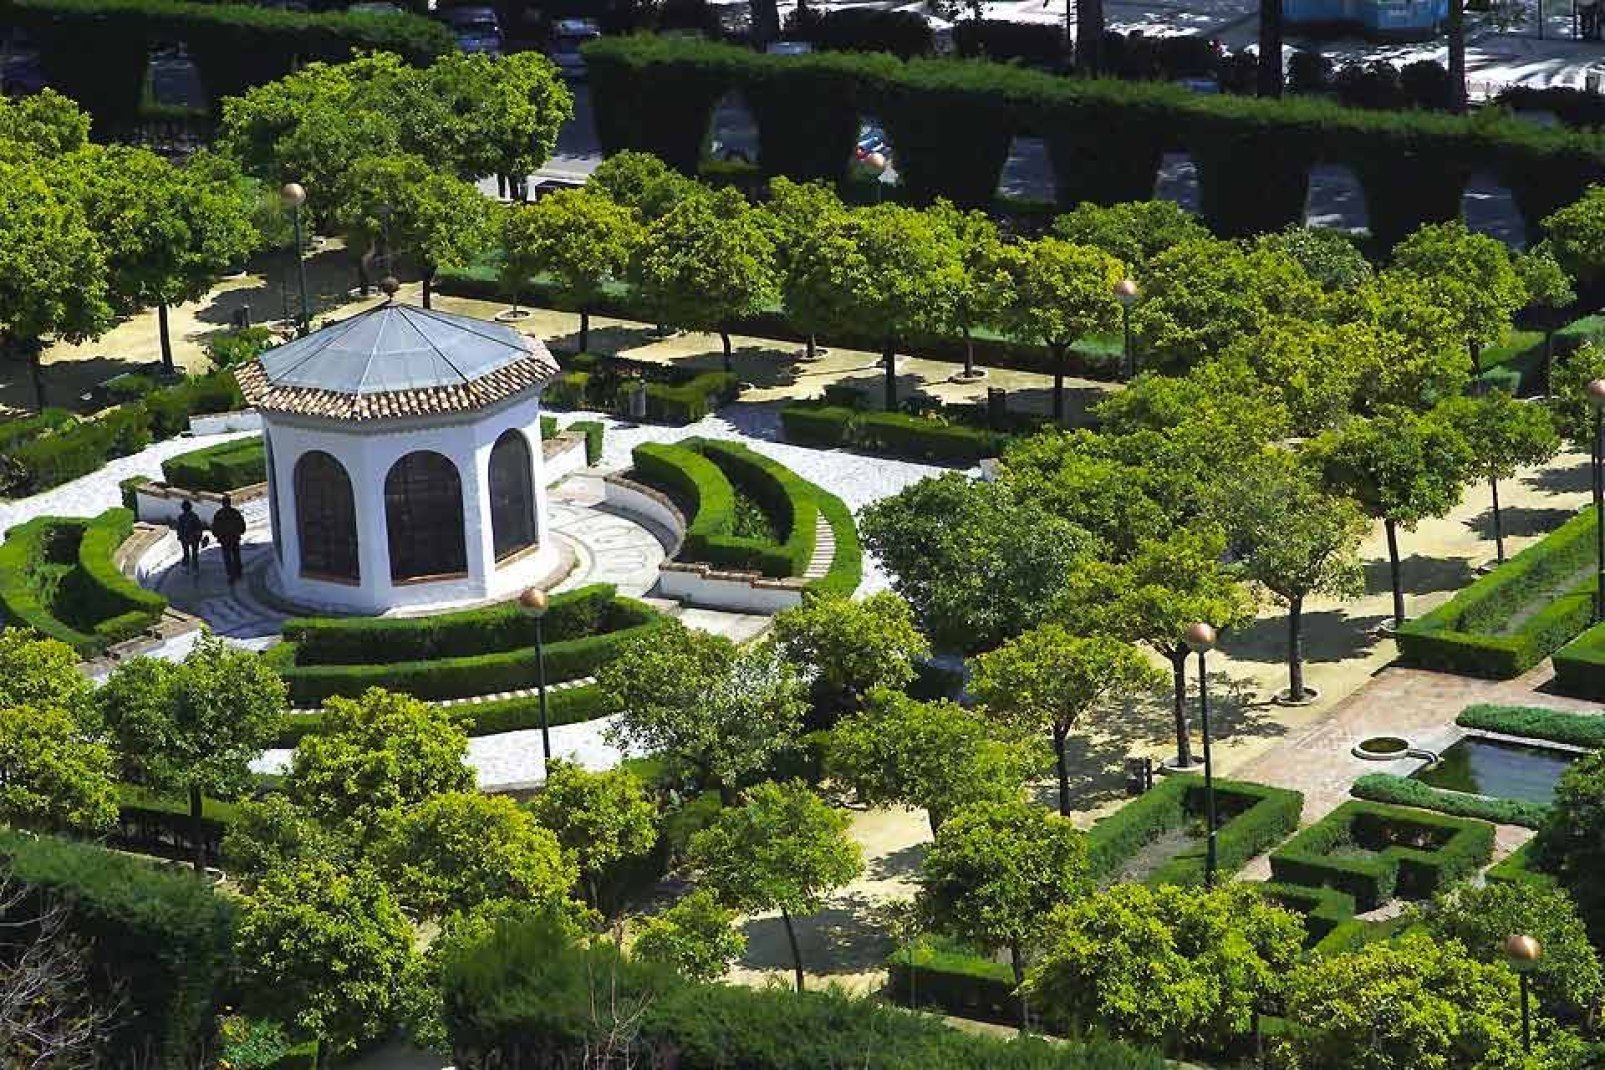 Este jardín tropical es el más bonito y el más importante de España. Está situado a solo 5 km de Málaga y ofrece a los turistas una visita inolvidable.